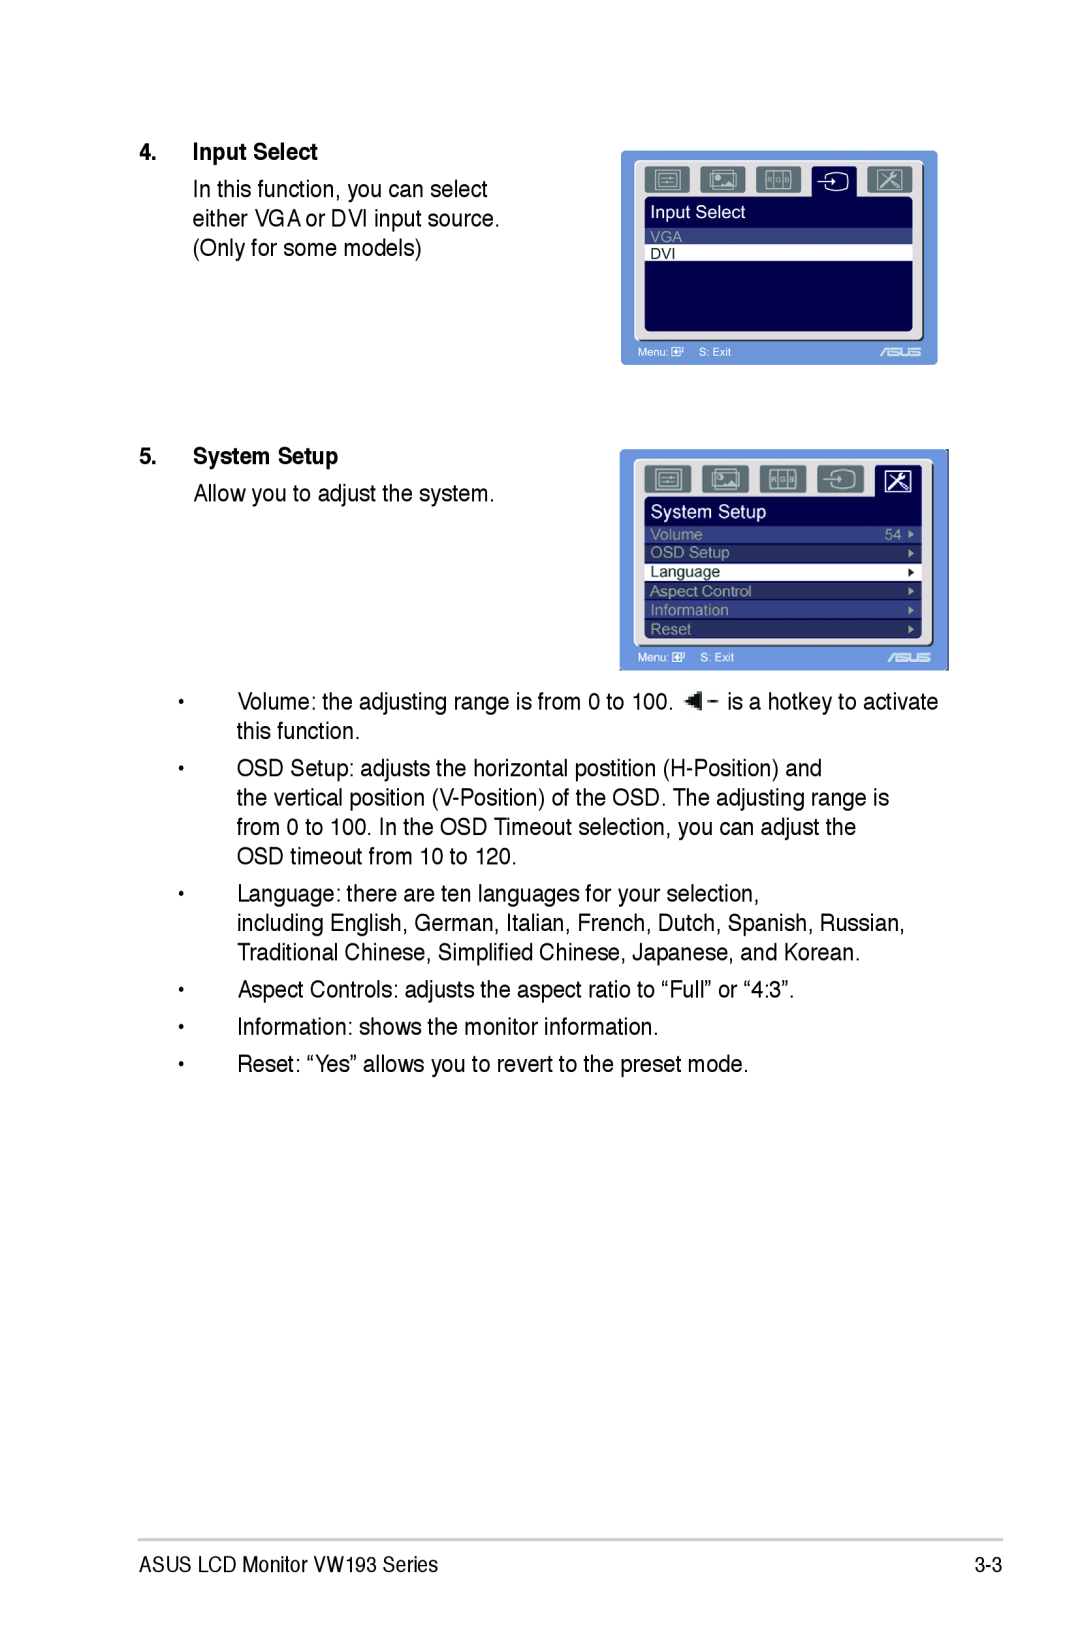 Asus VW193 manual Input Select, System Setup 